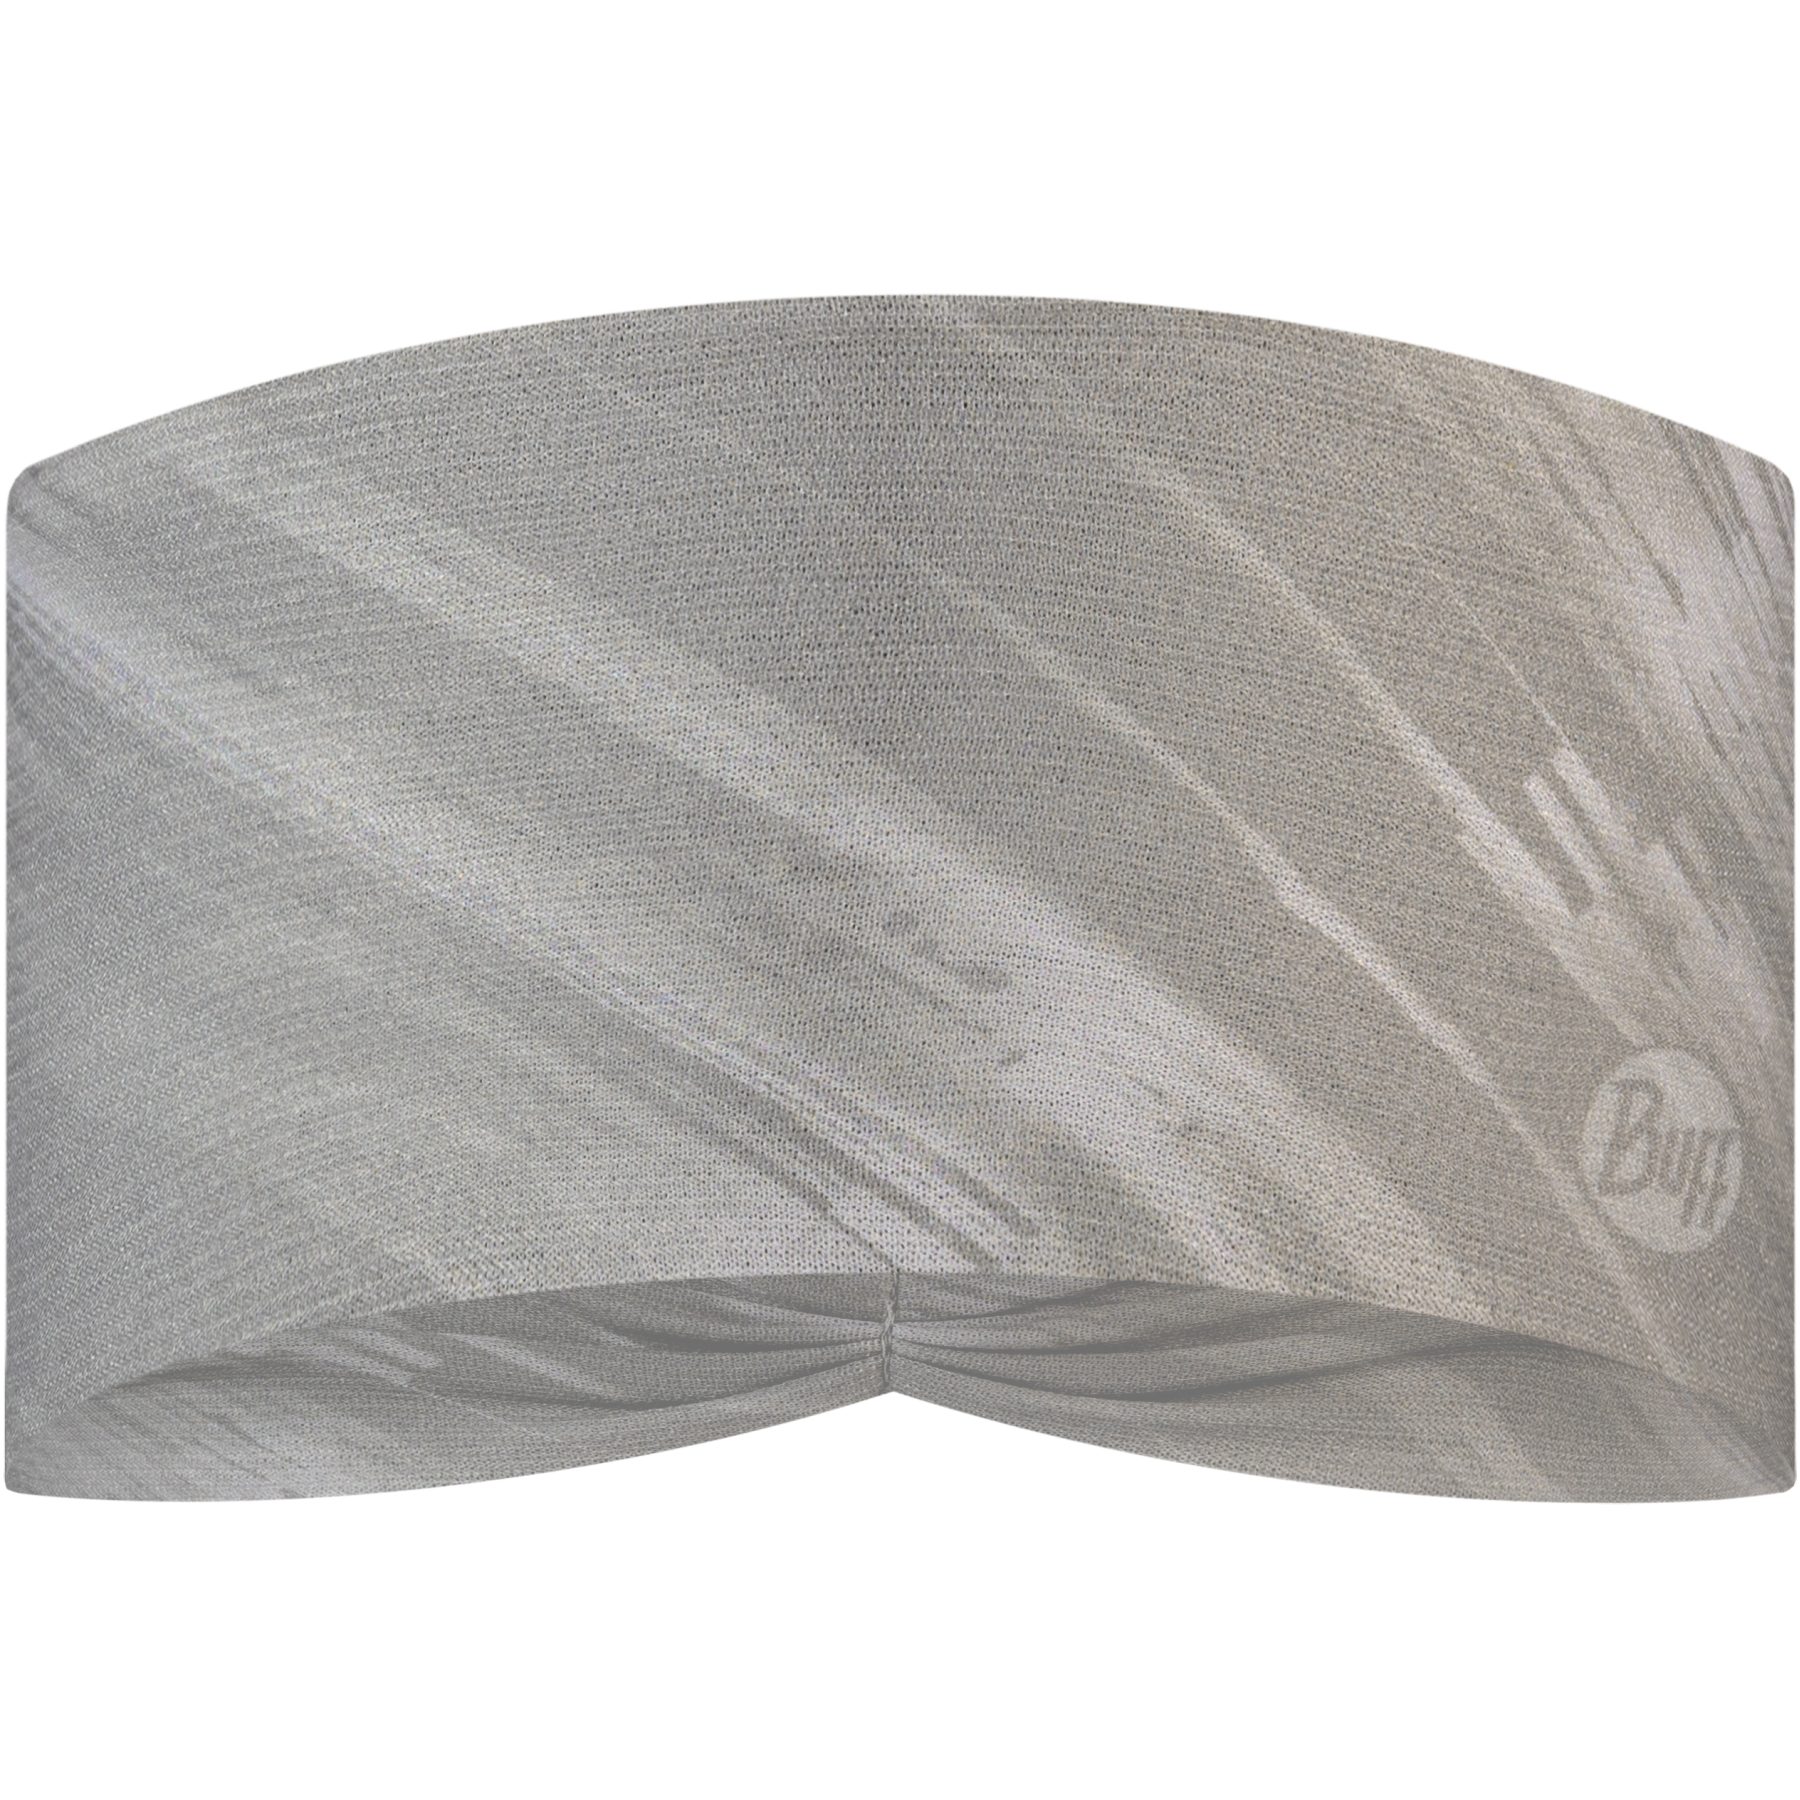 Produktbild von Buff® CoolNet UV® Ellipse Stirnband - Jaru Light Grey